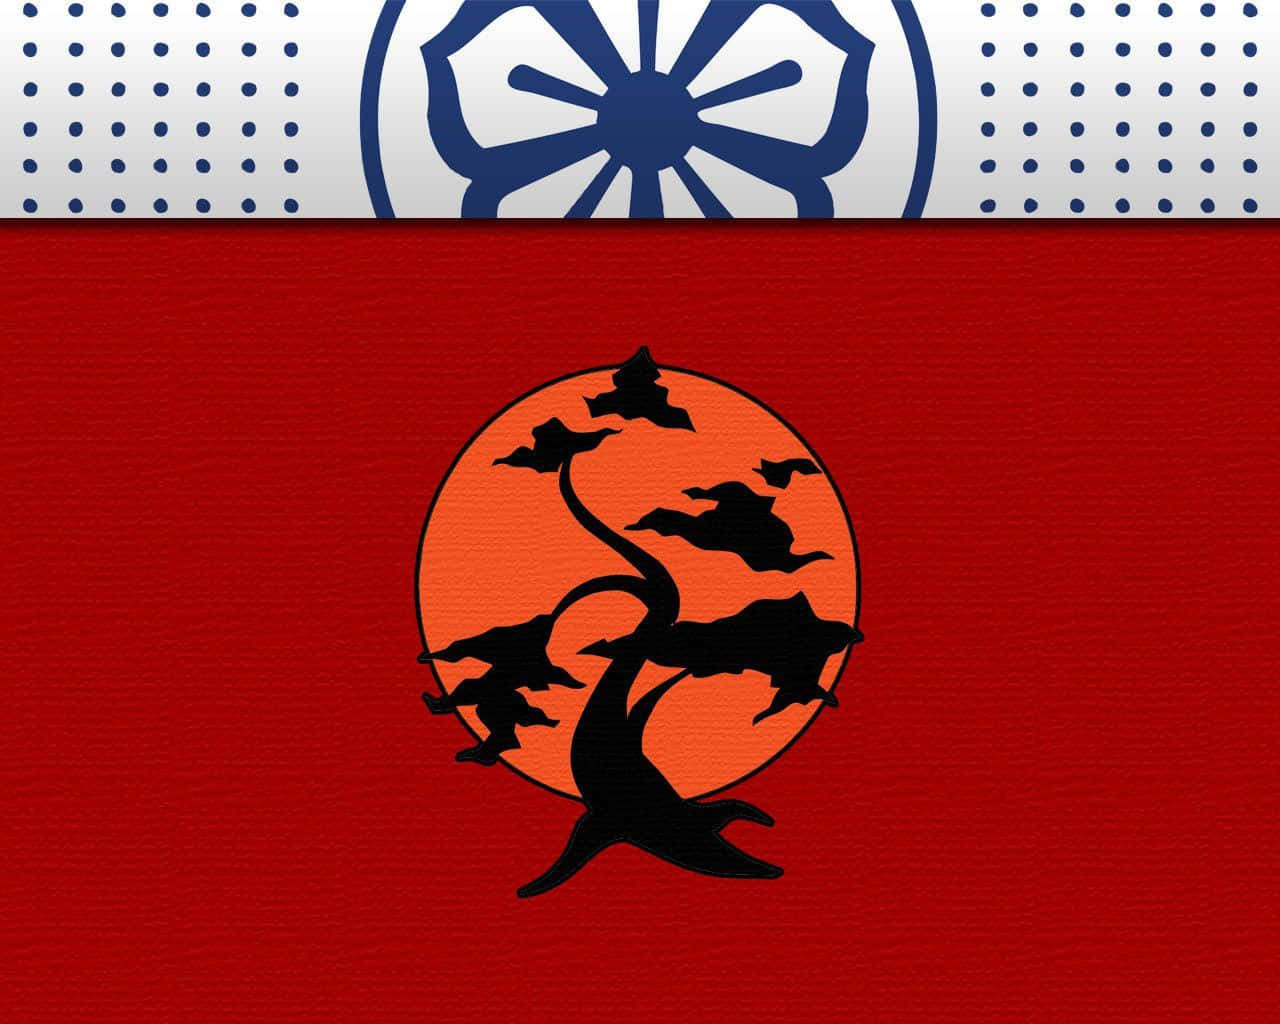 The iconic Cobra Kai logo